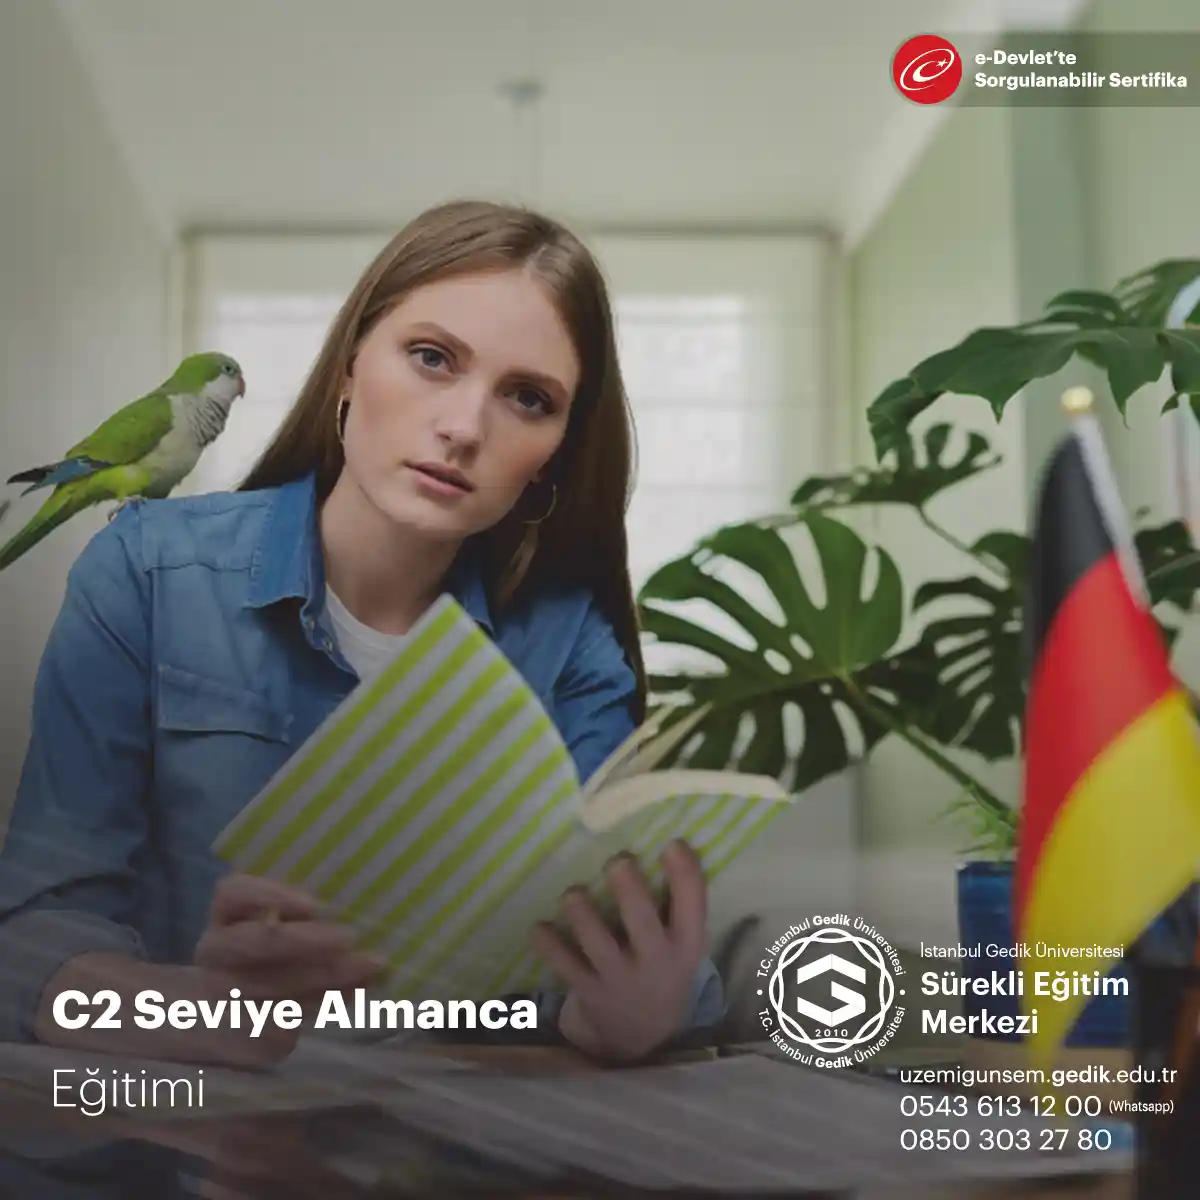 C2 Seviye Almanca Eğitimi